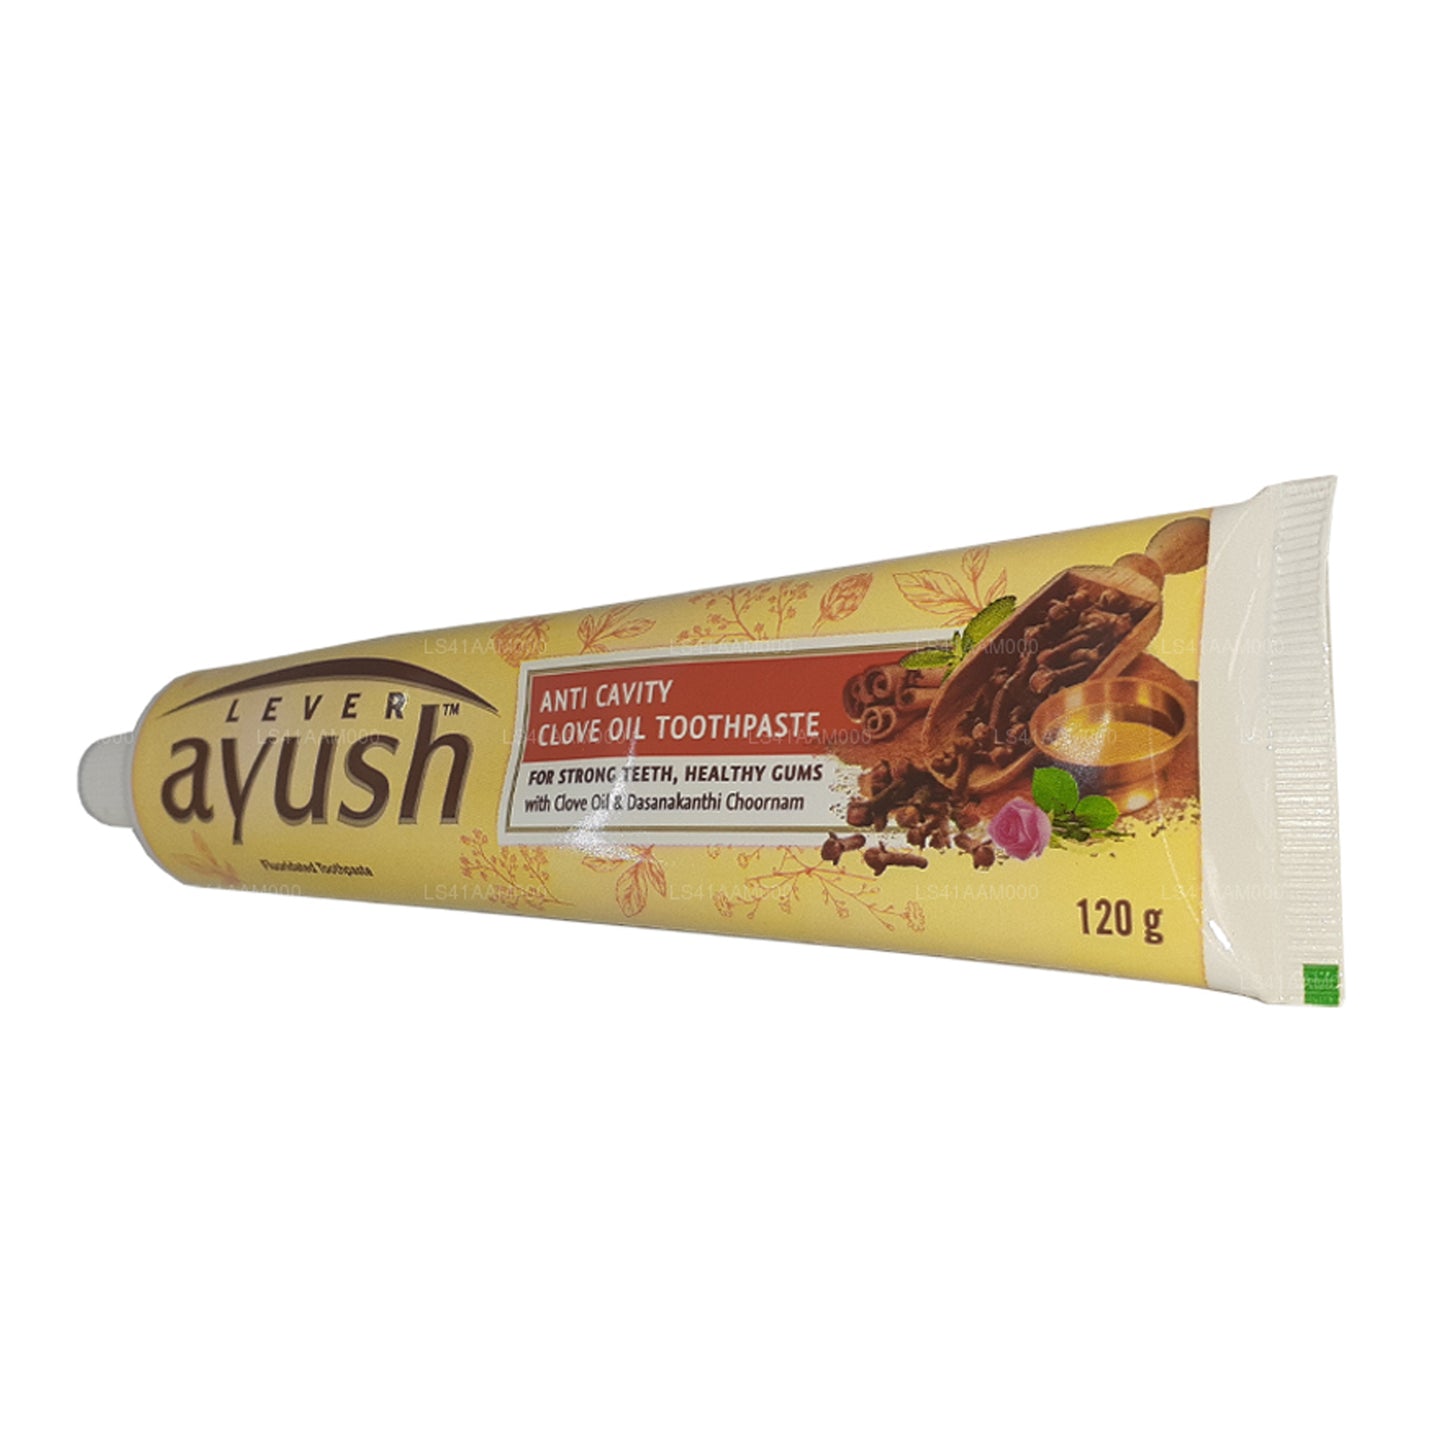 Pasta de dientes con aceite de clavo anti caries Ayush